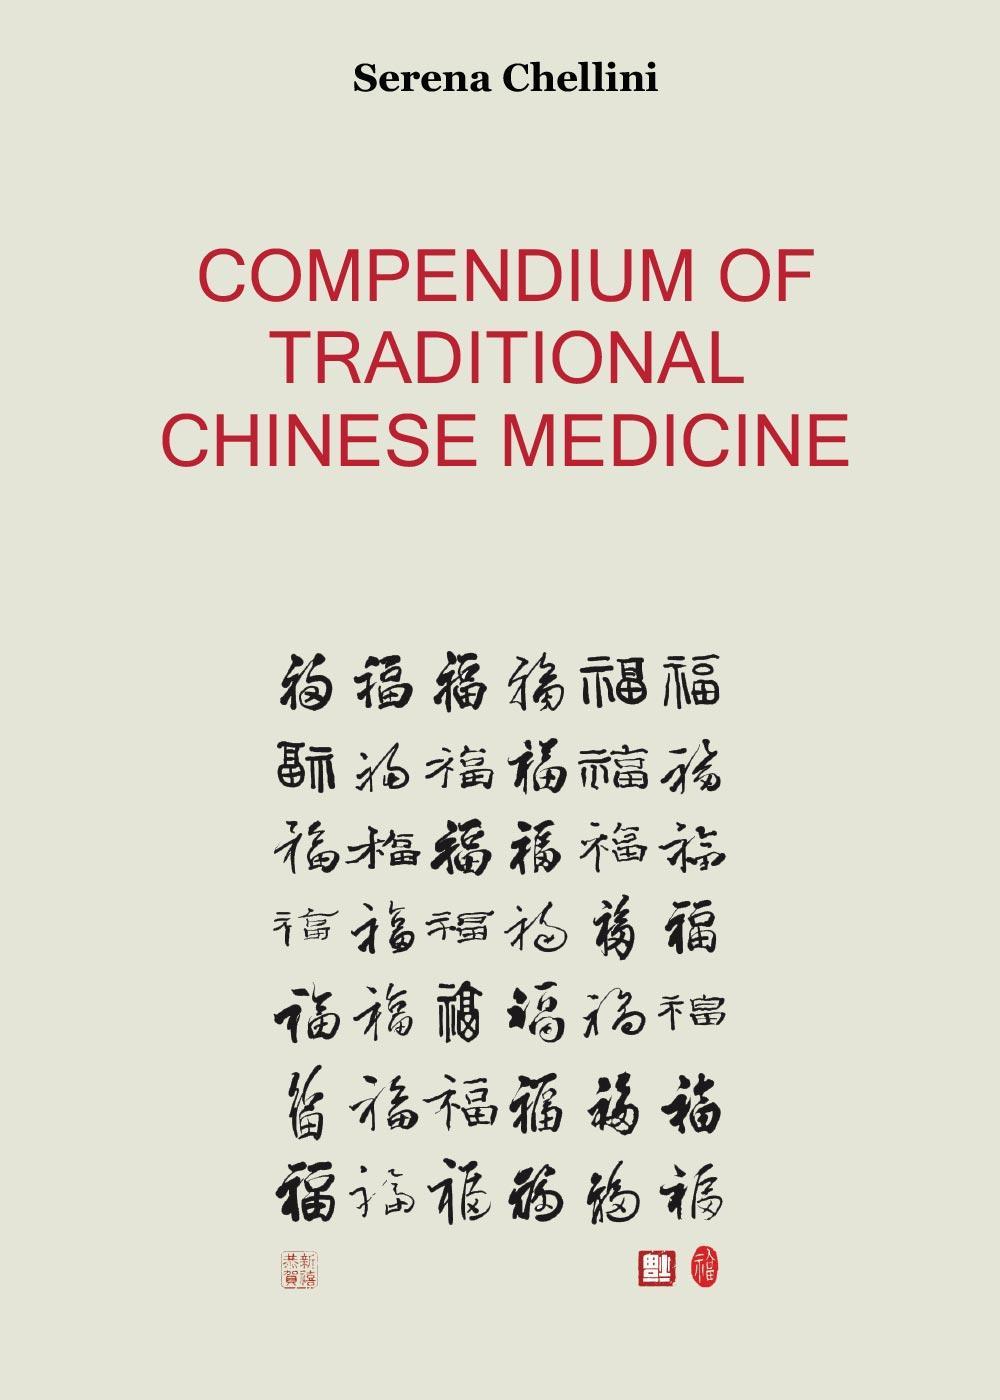 Libri Serena Chellini - Compendium Of Traditional Chinese Medicine NUOVO SIGILLATO, EDIZIONE DEL 07/06/2016 SUBITO DISPONIBILE